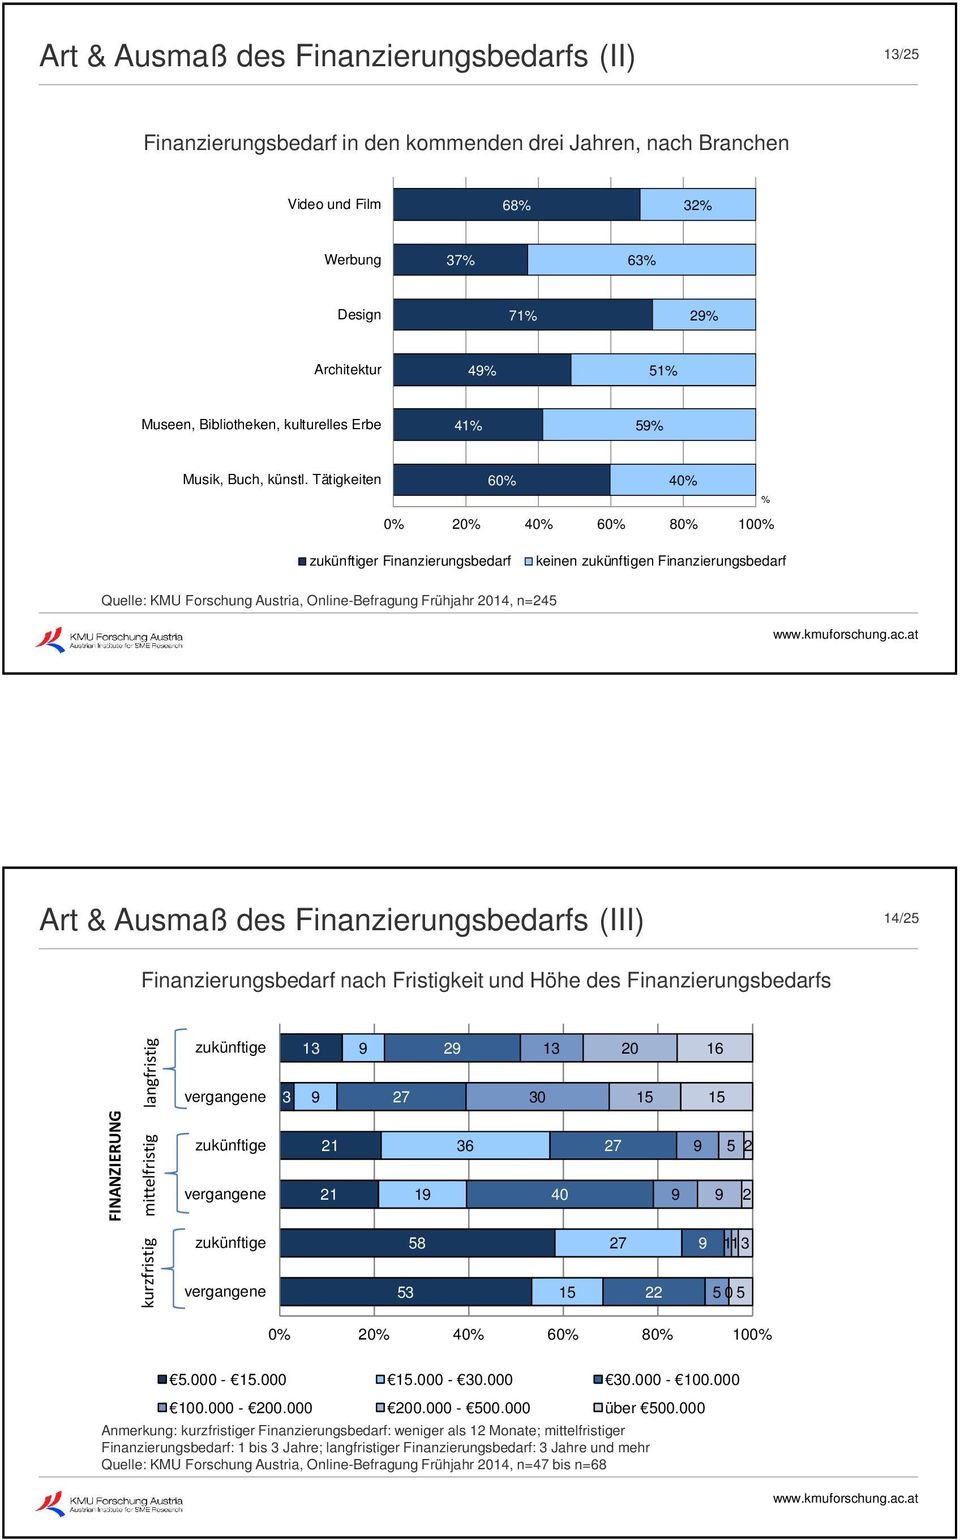 Tätigkeiten 60% 40% % 0% 20% 40% 60% 80% 100% zukünftiger Finanzierungsbedarf keinen zukünftigen Finanzierungsbedarf Quelle: KMU Forschung Austria, Online-Befragung Frühjahr 2014, n=245 Art & Ausmaß